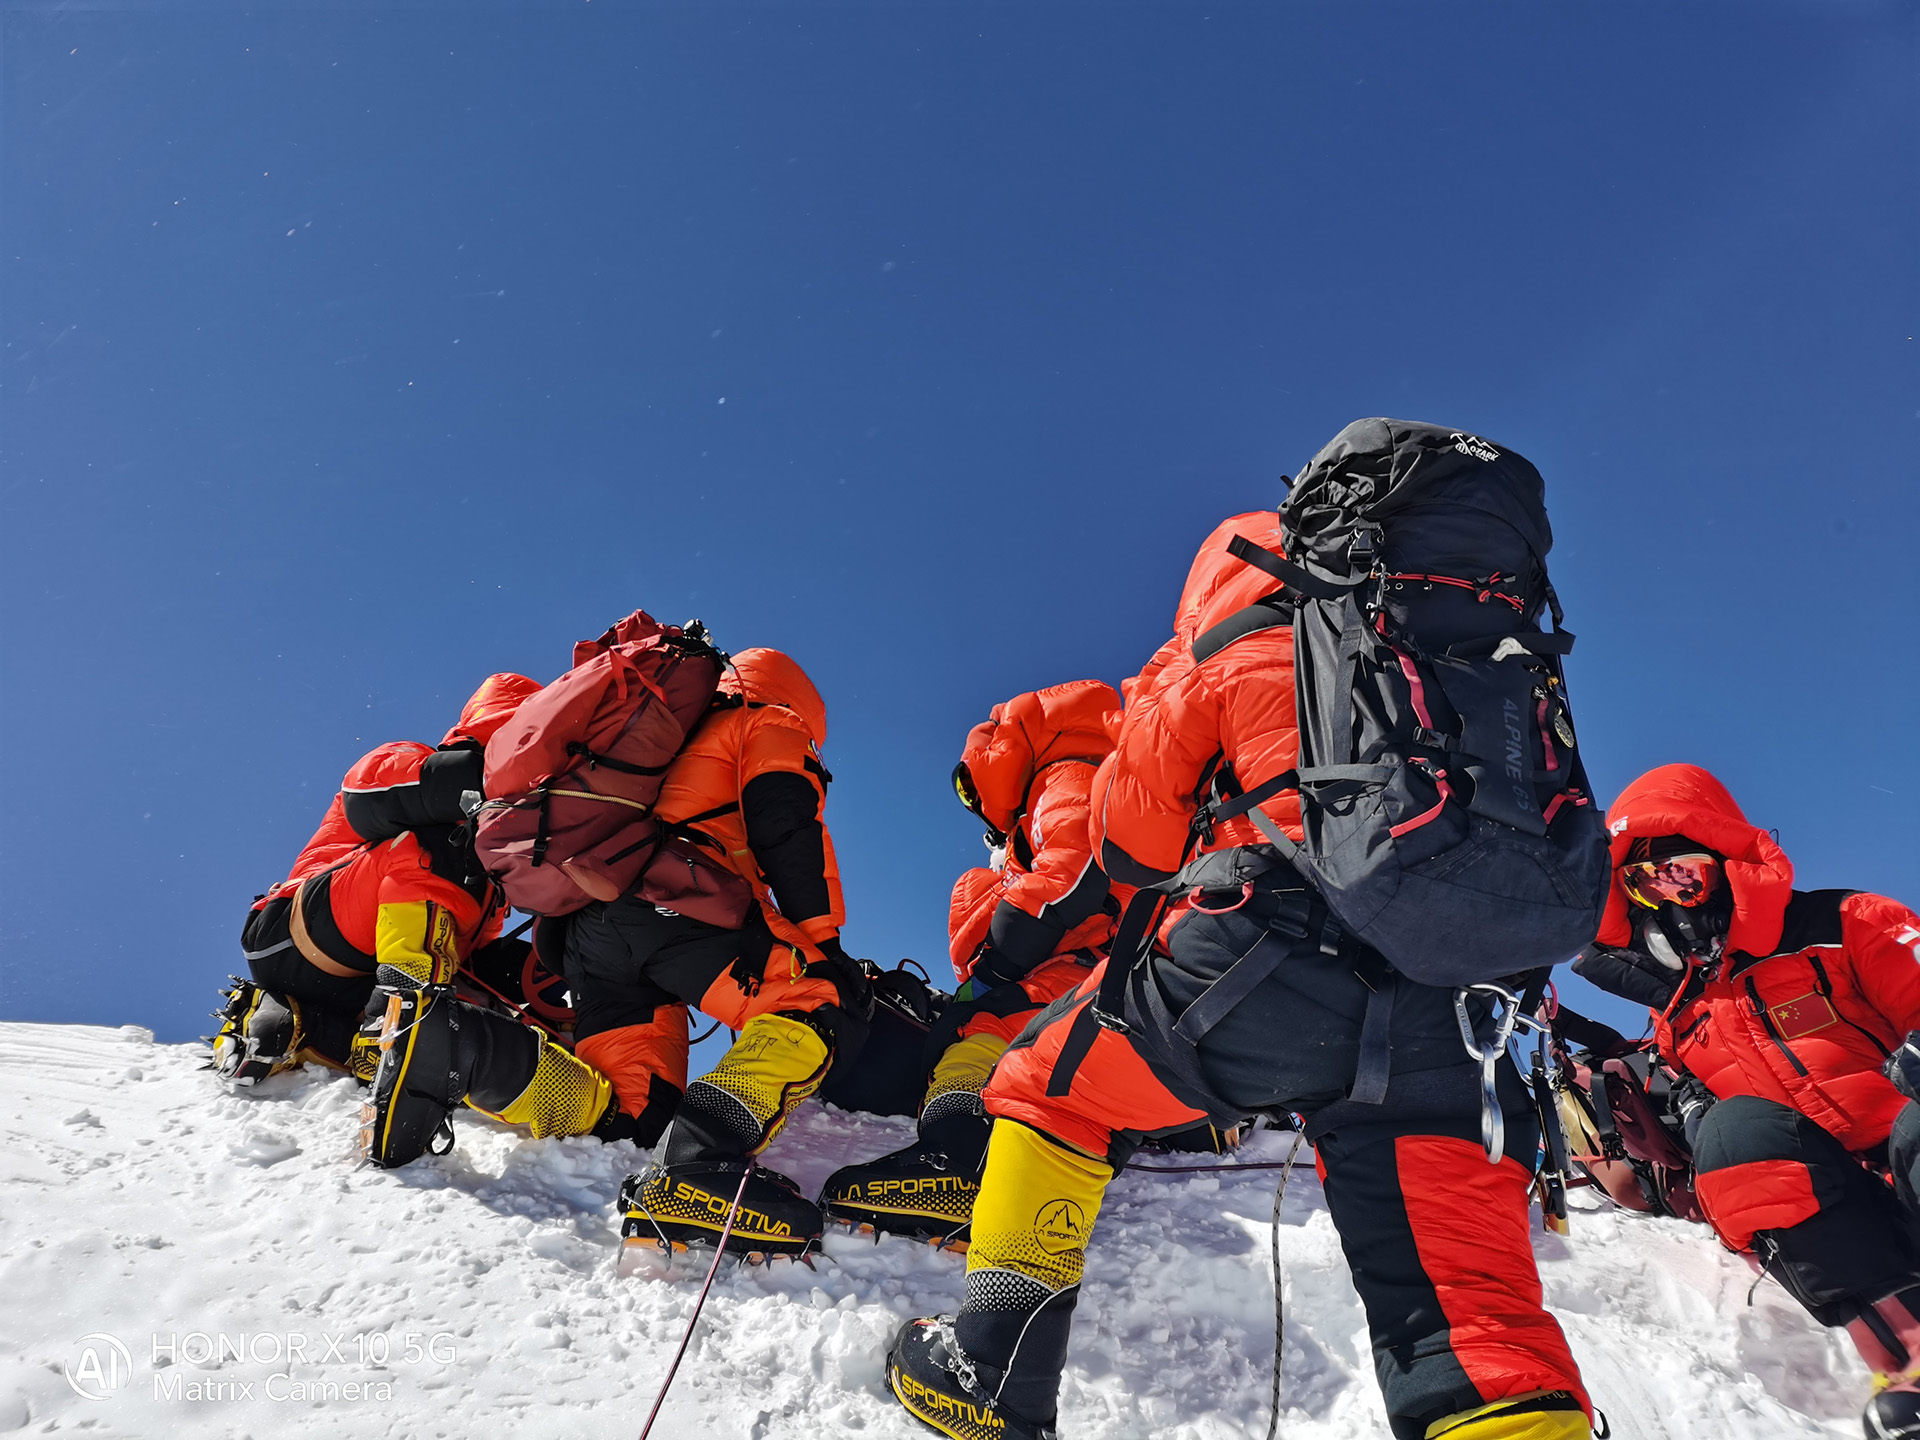 中国登山队成功登顶珠峰，5G连线见证中国荣耀